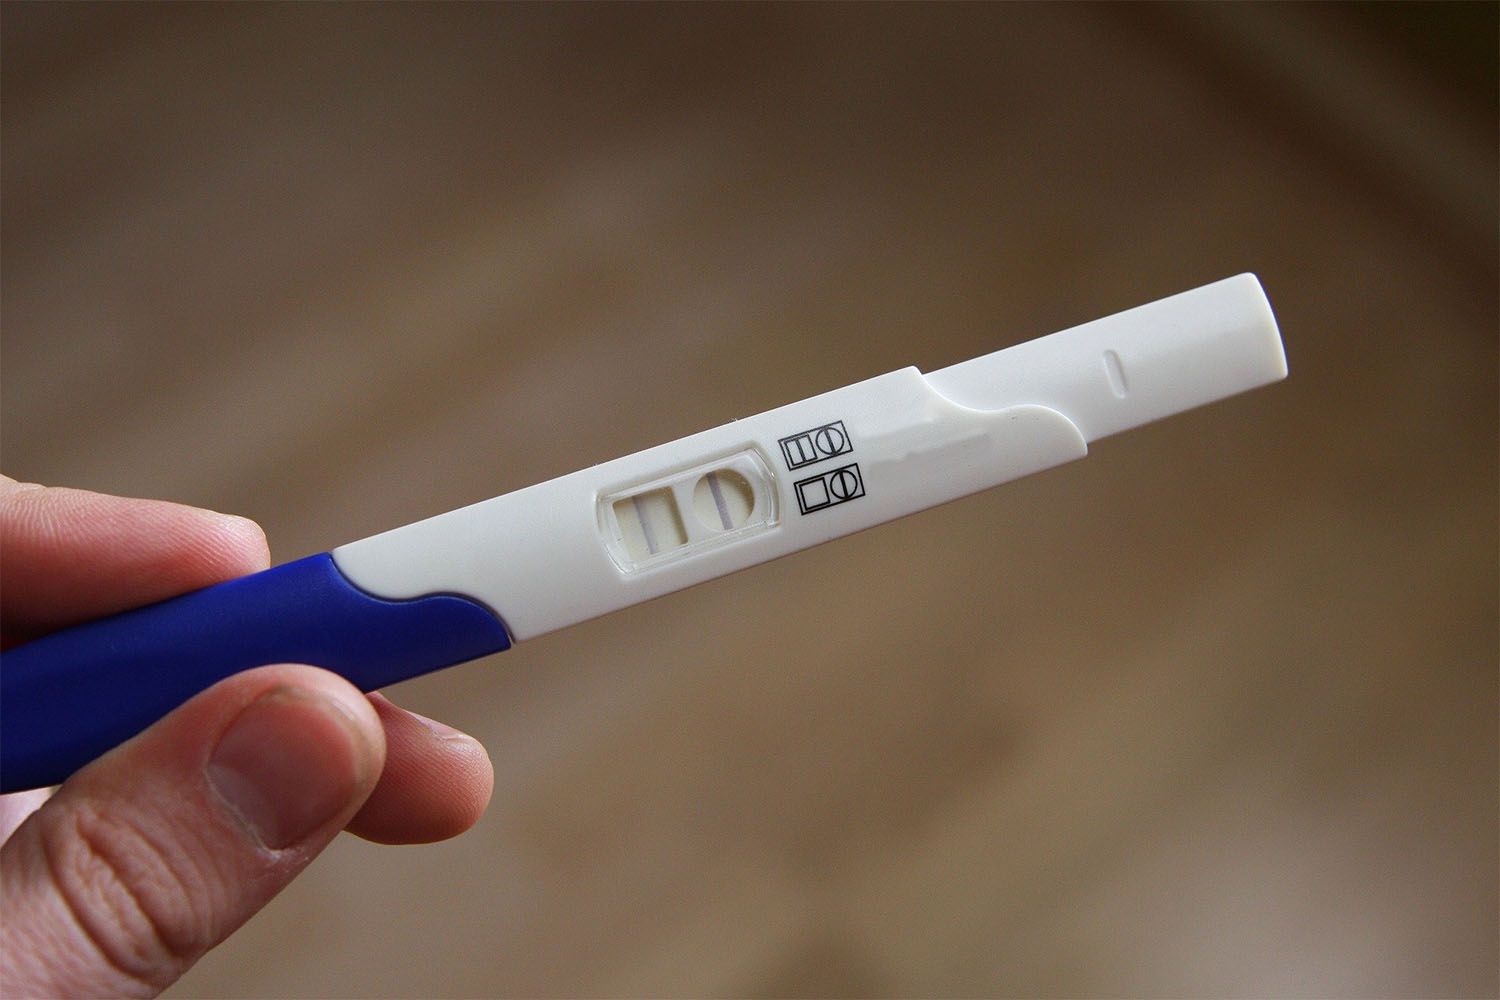 Test di gravidanza